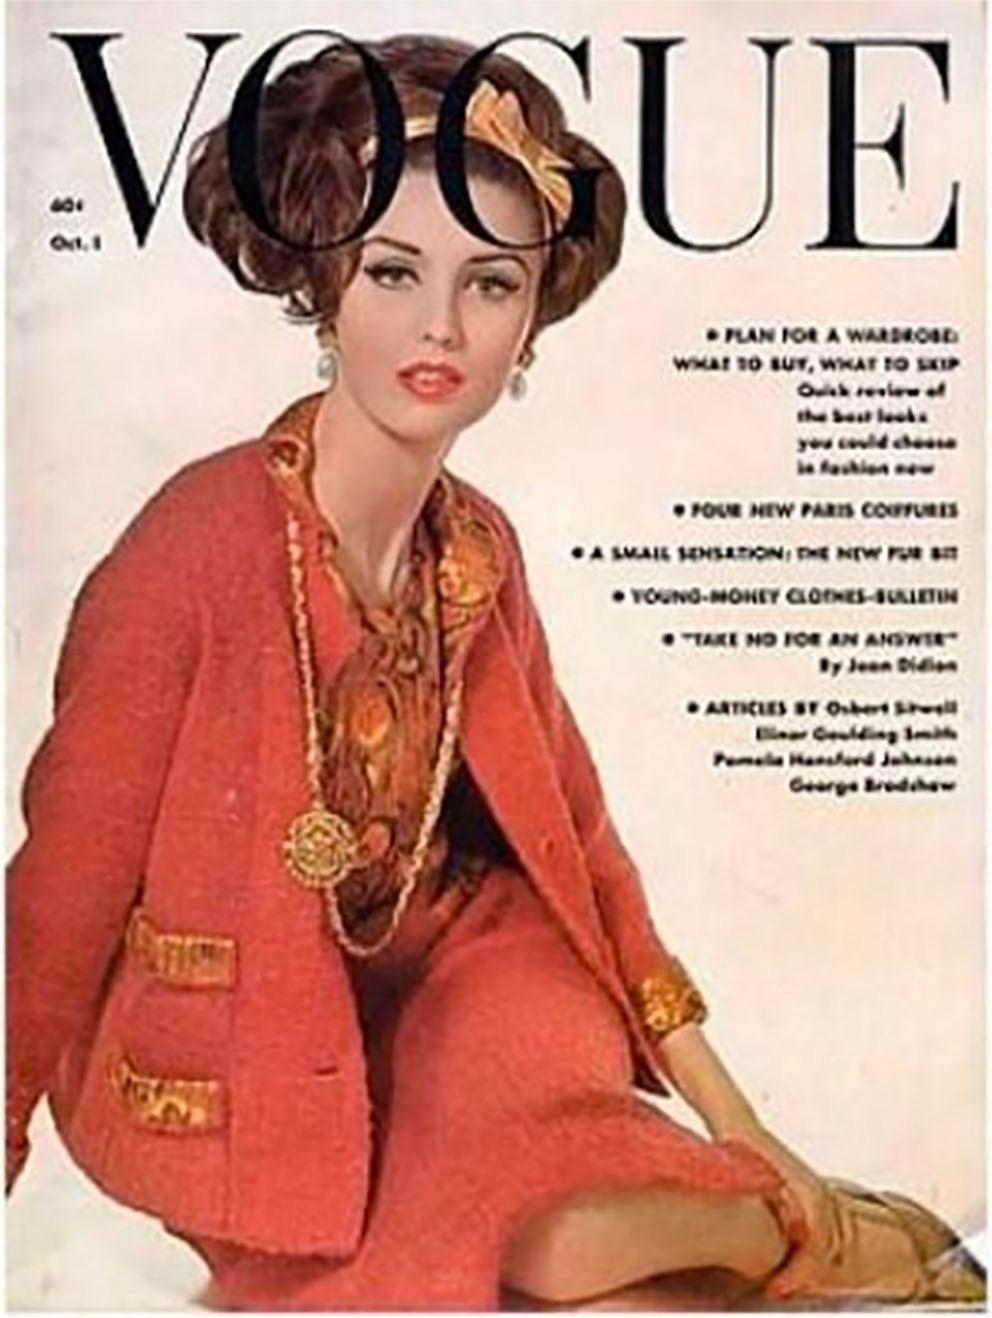 1961 Sehr seltenes Haute Couture Chanel Seidenoberteil mit Schnappverschluss hinten, mit Zierknöpfen, ethnischem Seidenlurexmuster, Seidenfutter.
Siehe die beigefügten Titelseiten der französischen Vogue und der französischen Elle sowie die